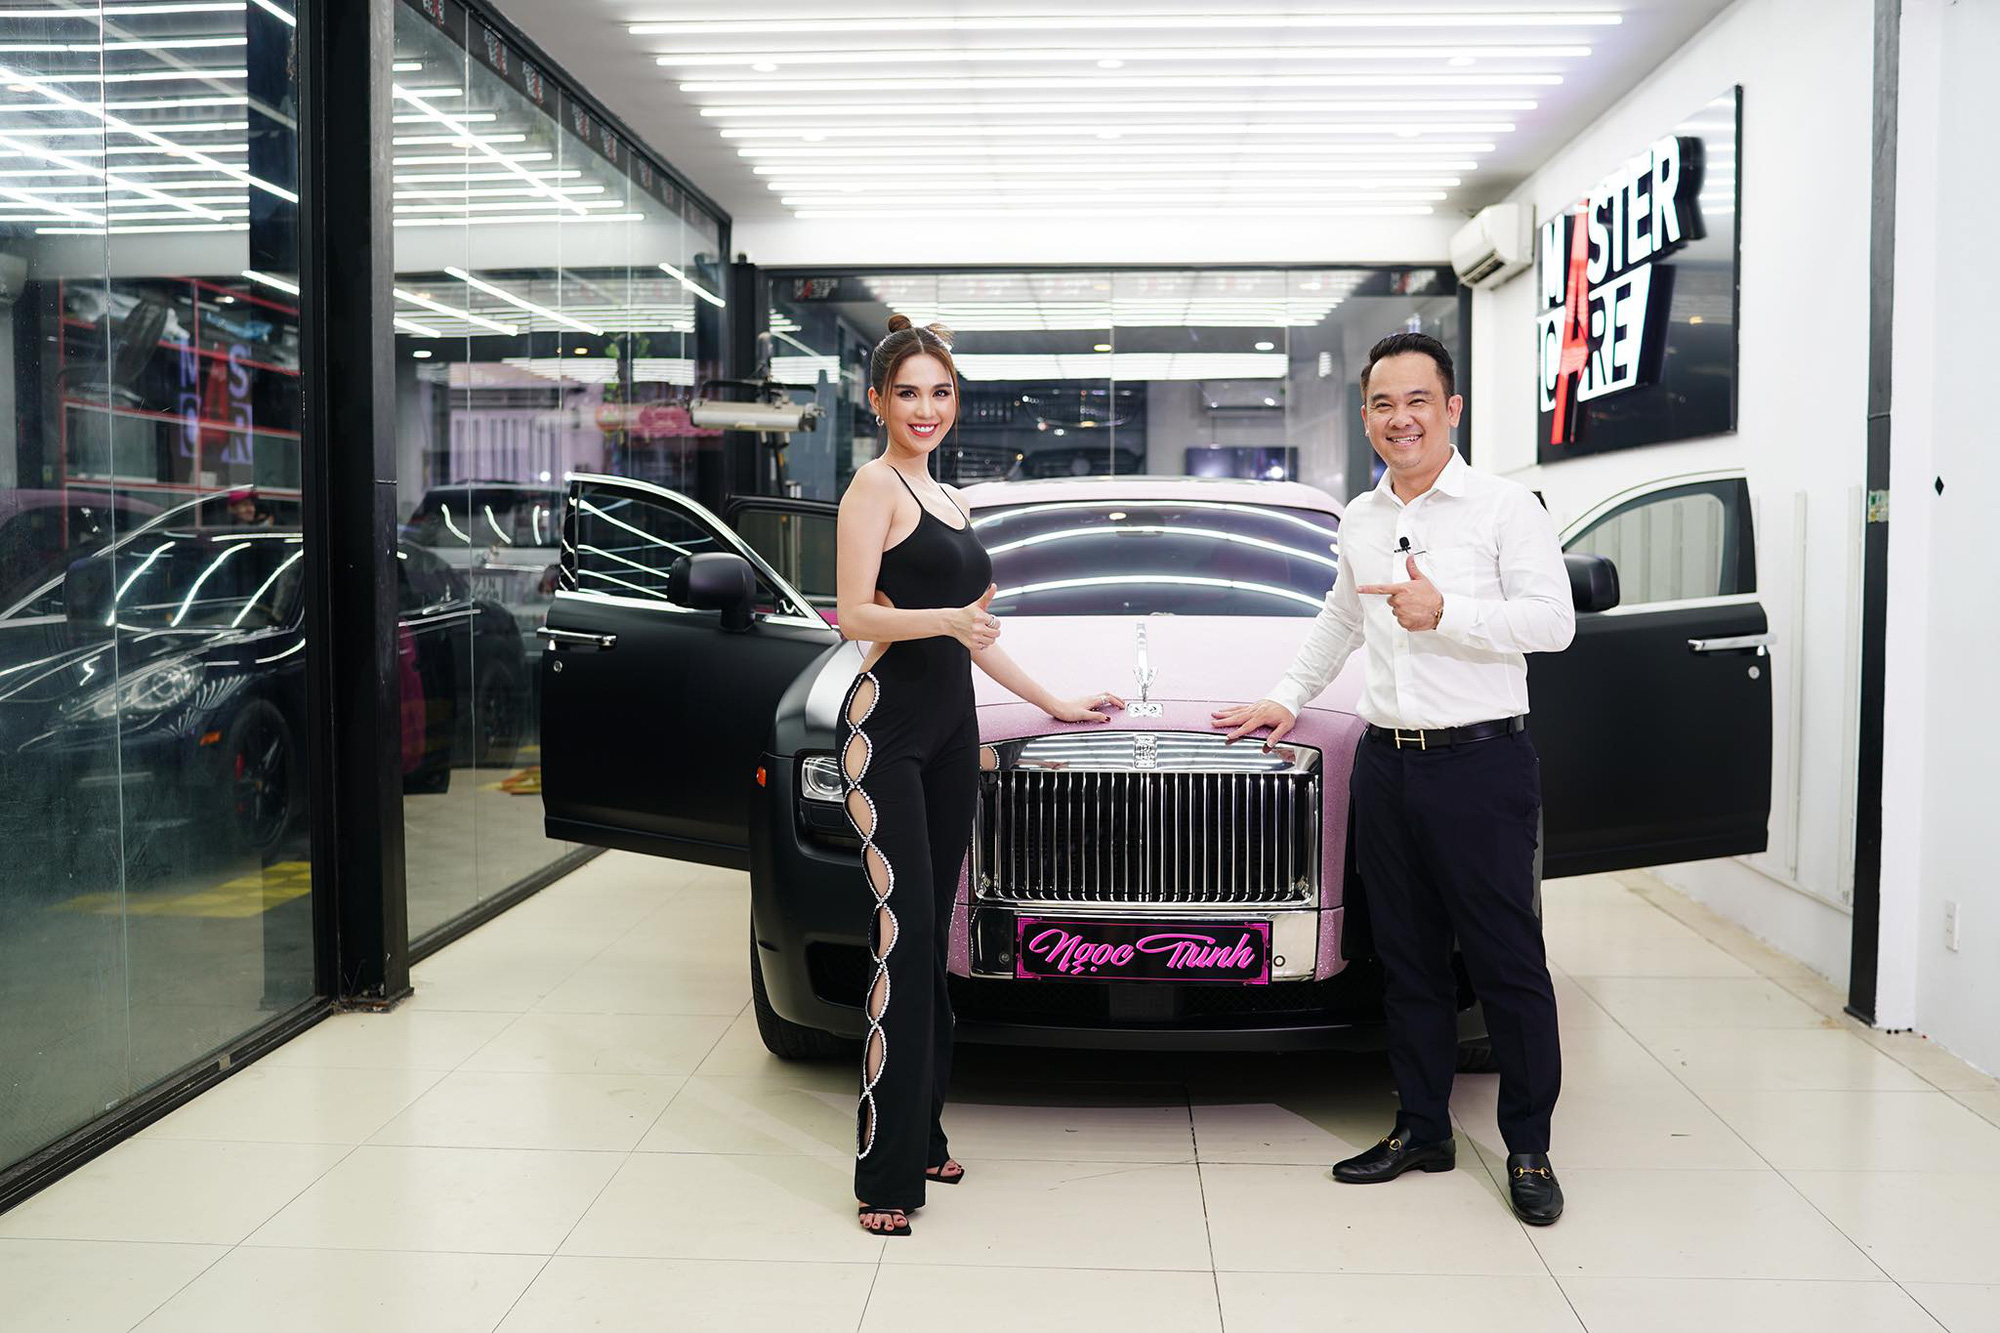 Ngọc Trinh khoe Rolls-Royce Ghost phiên bản Black Pink độc nhất Việt Nam, tiện rao bán Mercedes-Maybach S500 giá 6,5 tỷ đồng - Ảnh 8.